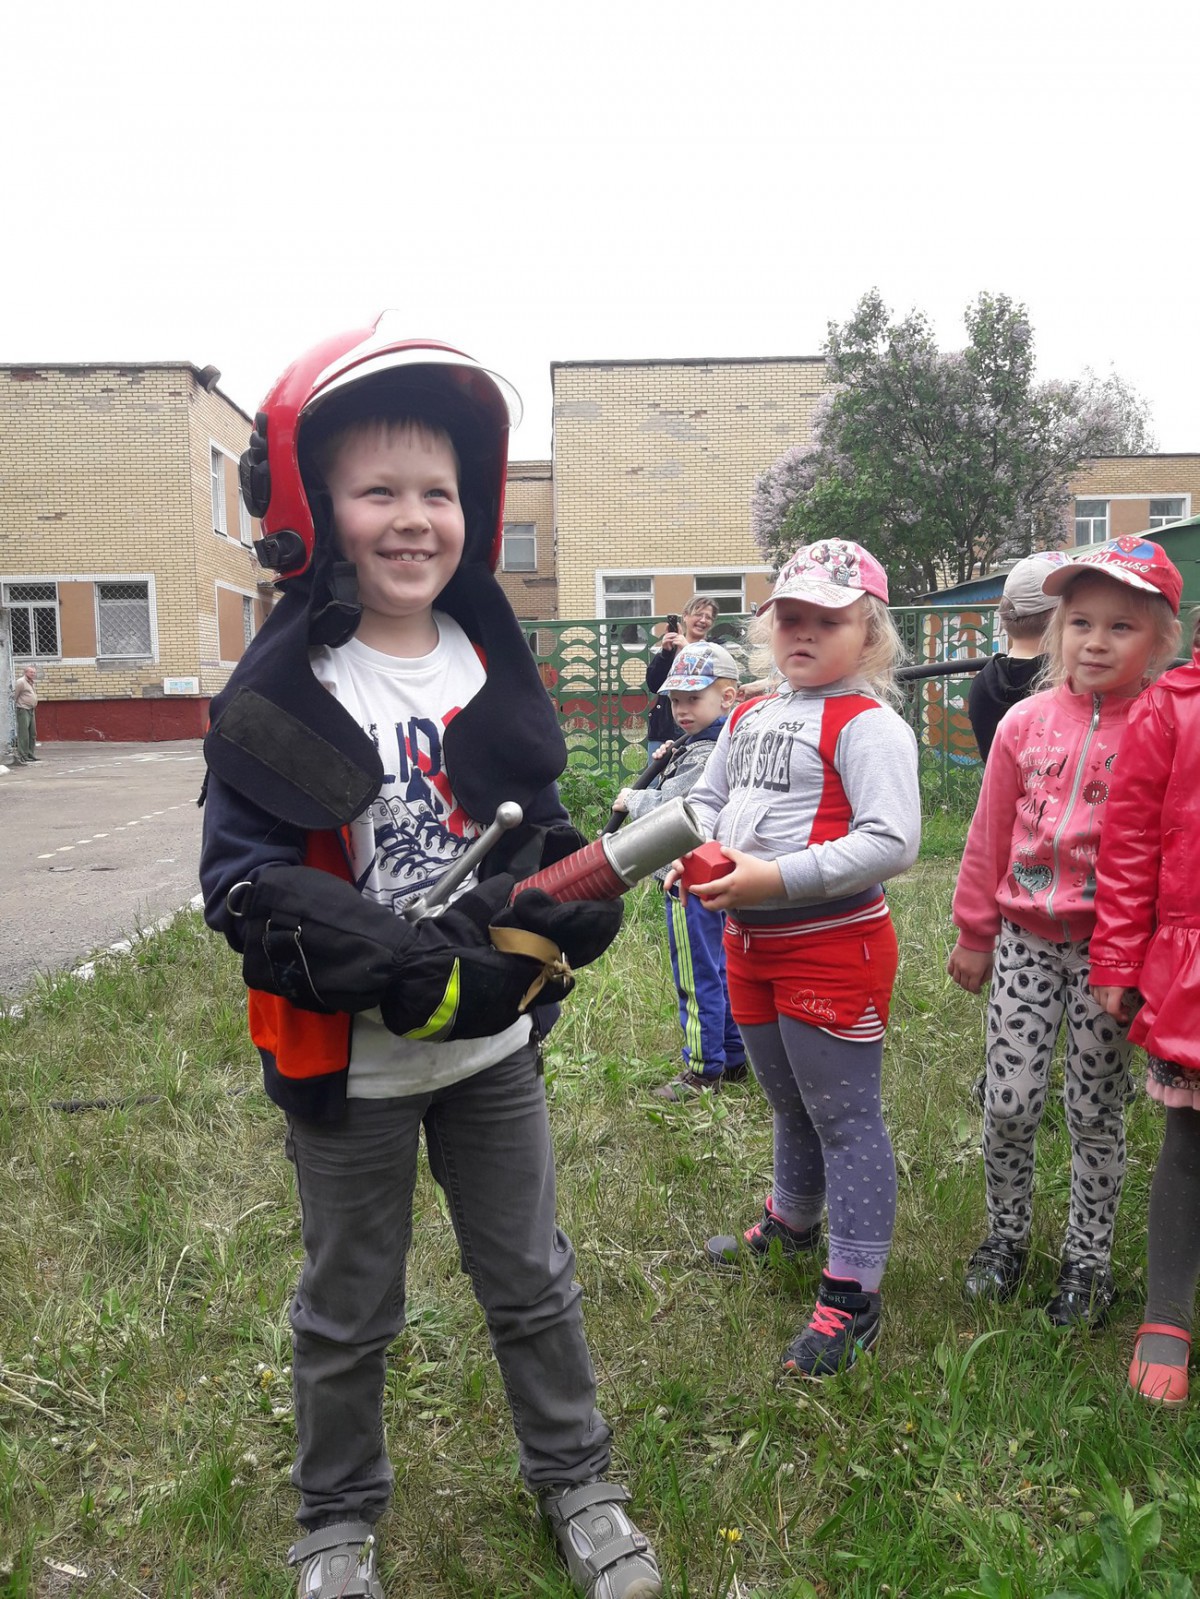 30 мая 2017 года бобруйские спасатели посетили ГУО «Ясли-сад № 75 г. Бобруйска». Целью данного визита было проведение тактико-специальных занятий в дошкольном учреждении.